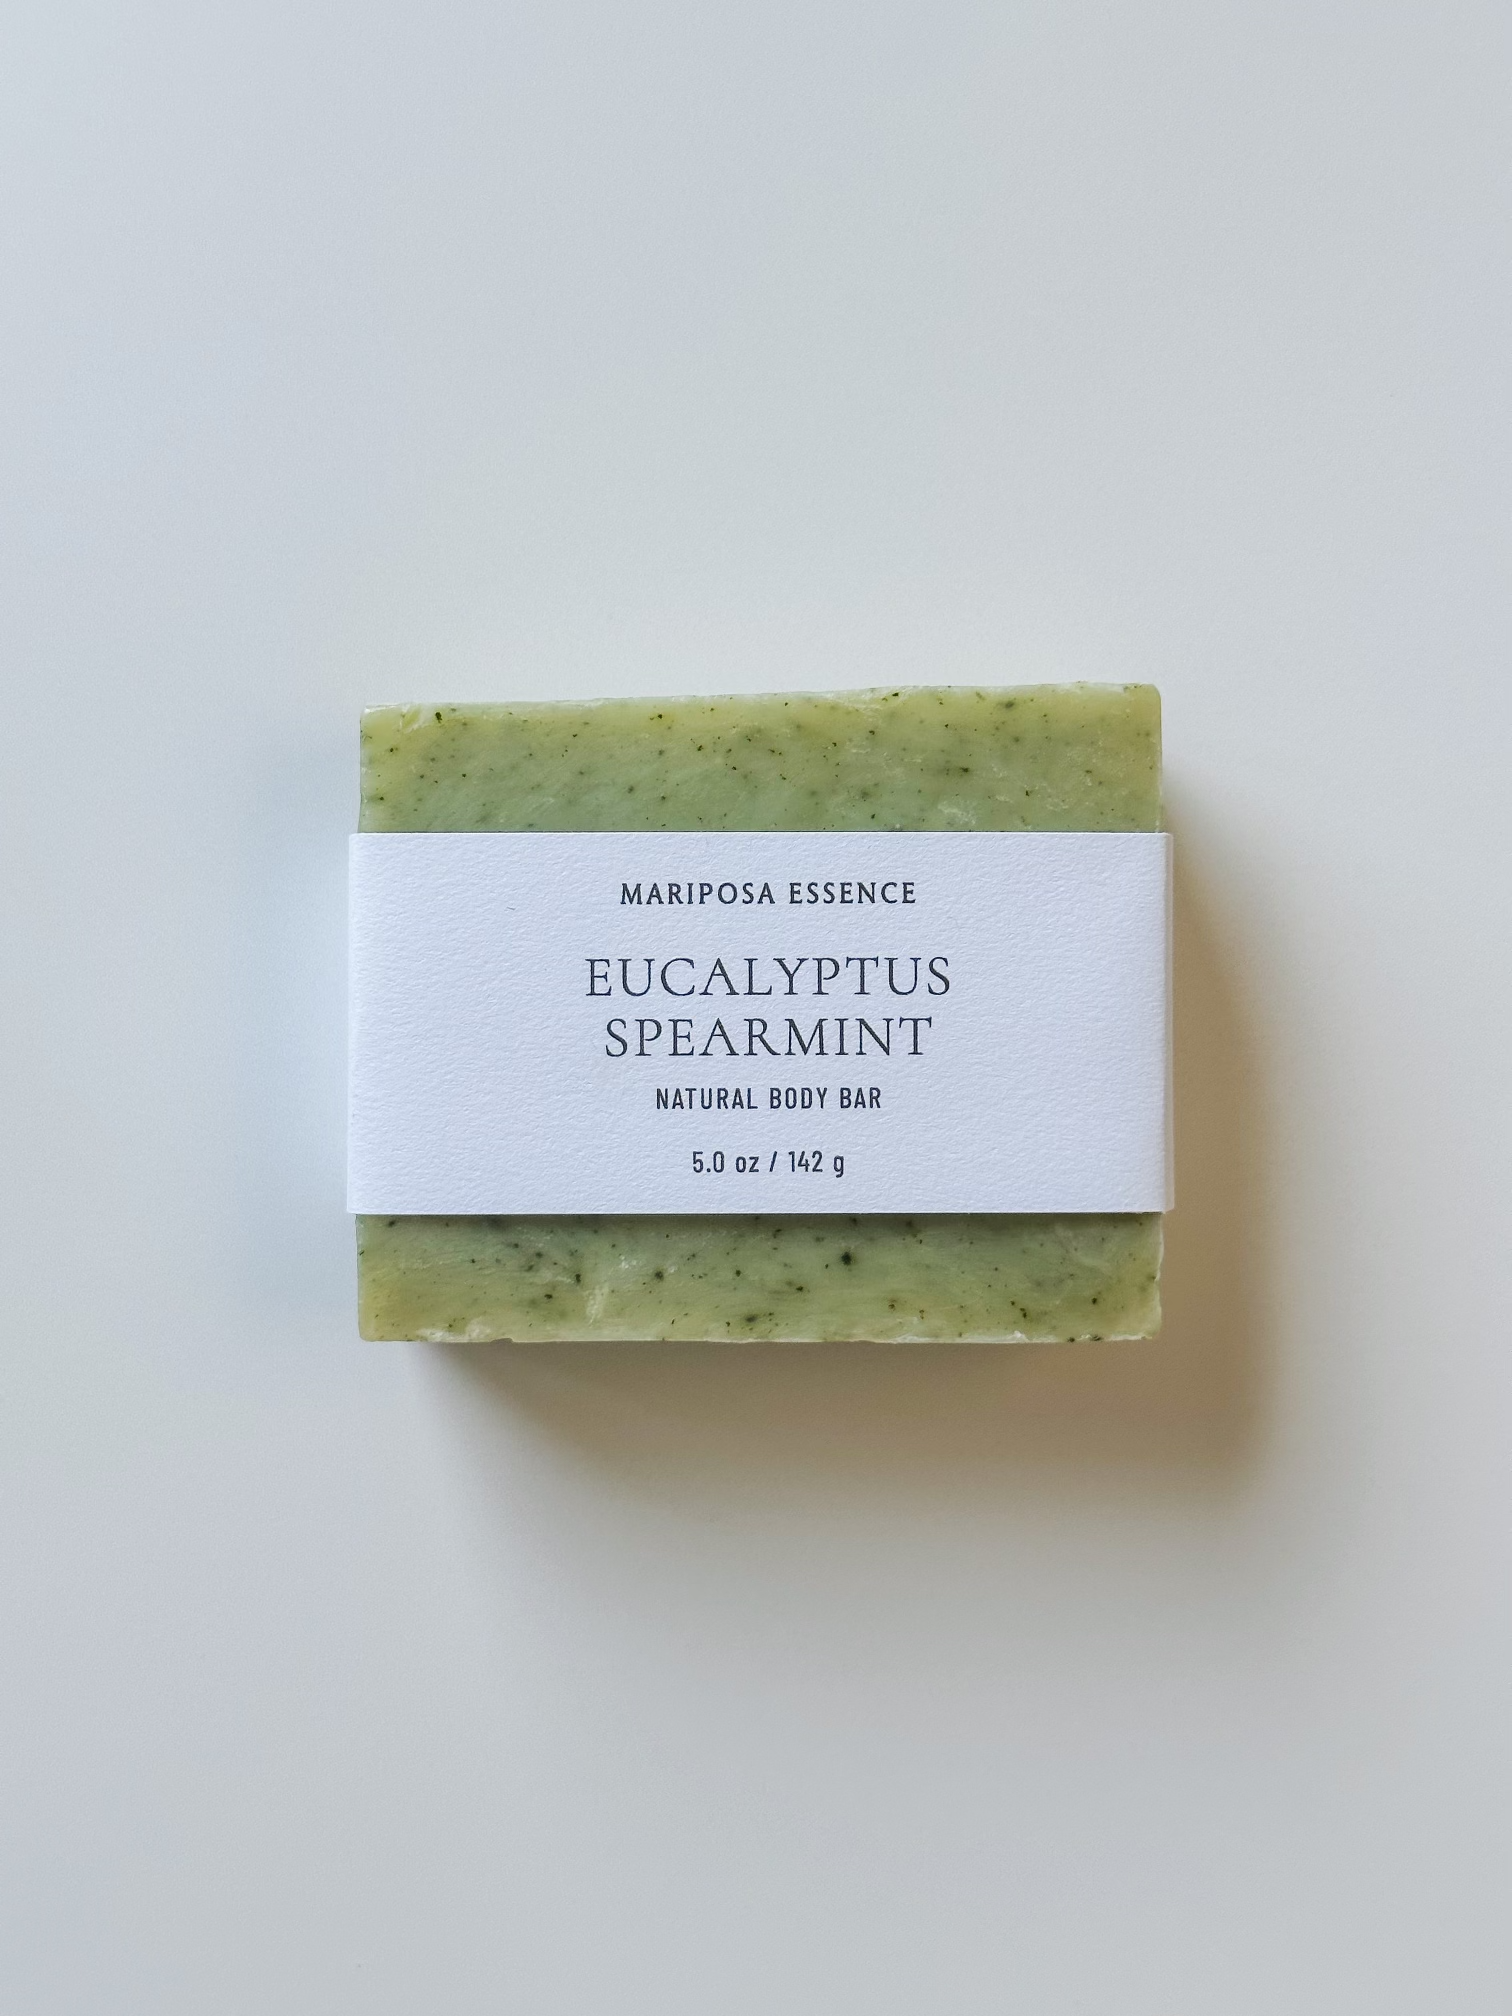 Eucalyptus Spearmint body bar with spirulina for texture.